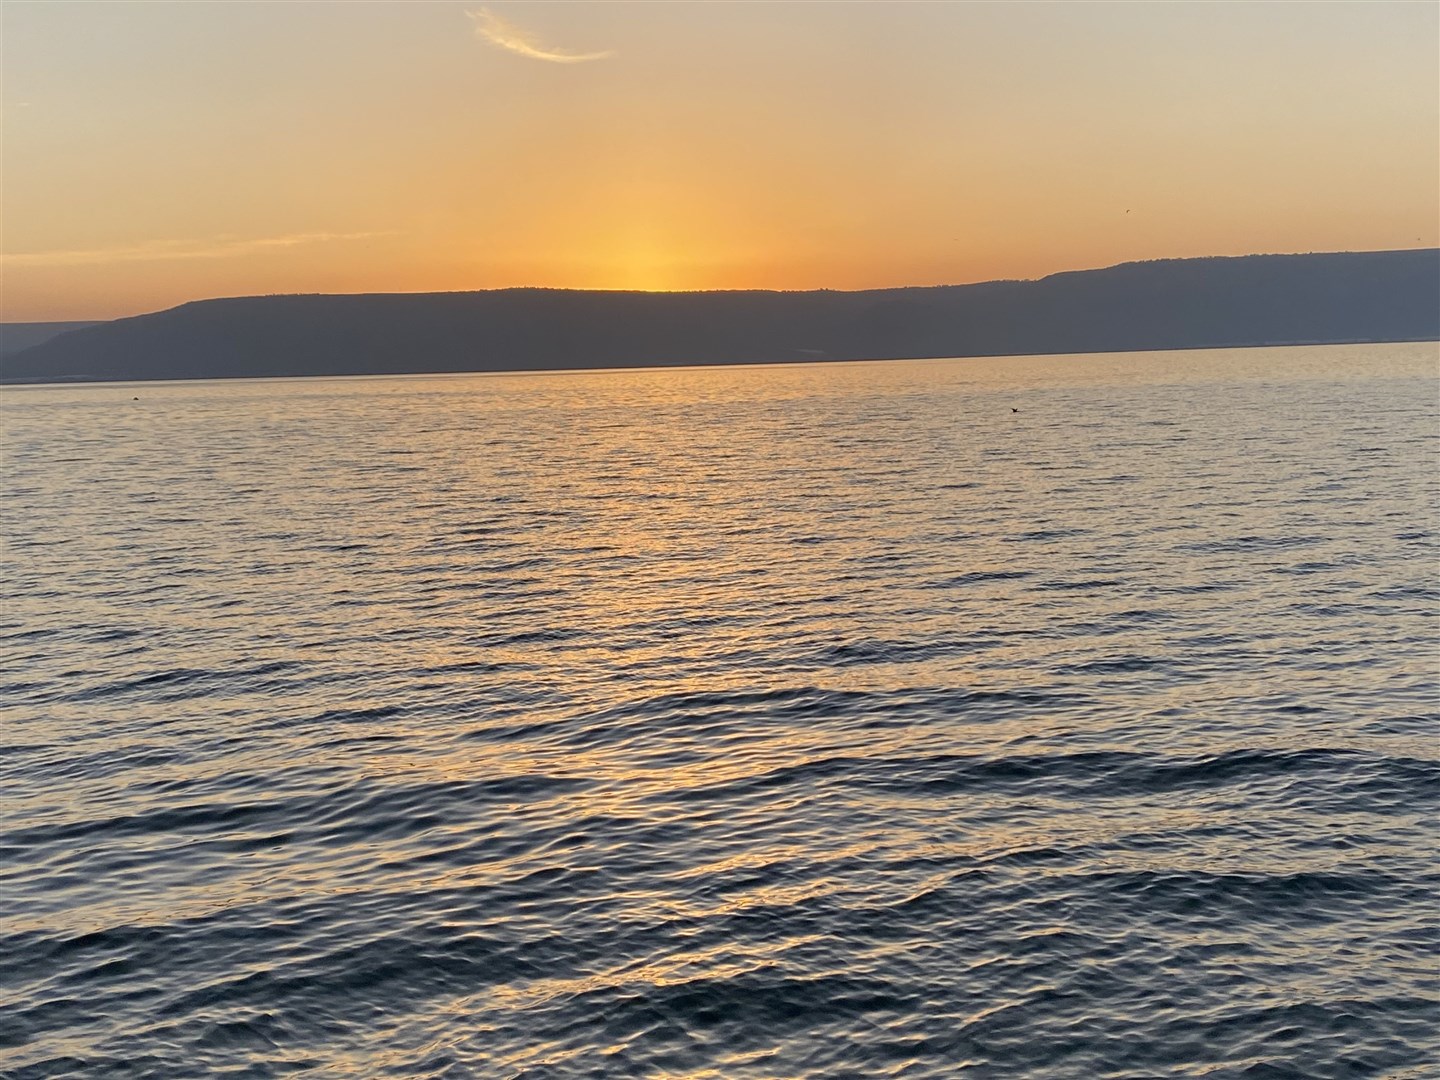 Sunrise on the Sea of Galilee.